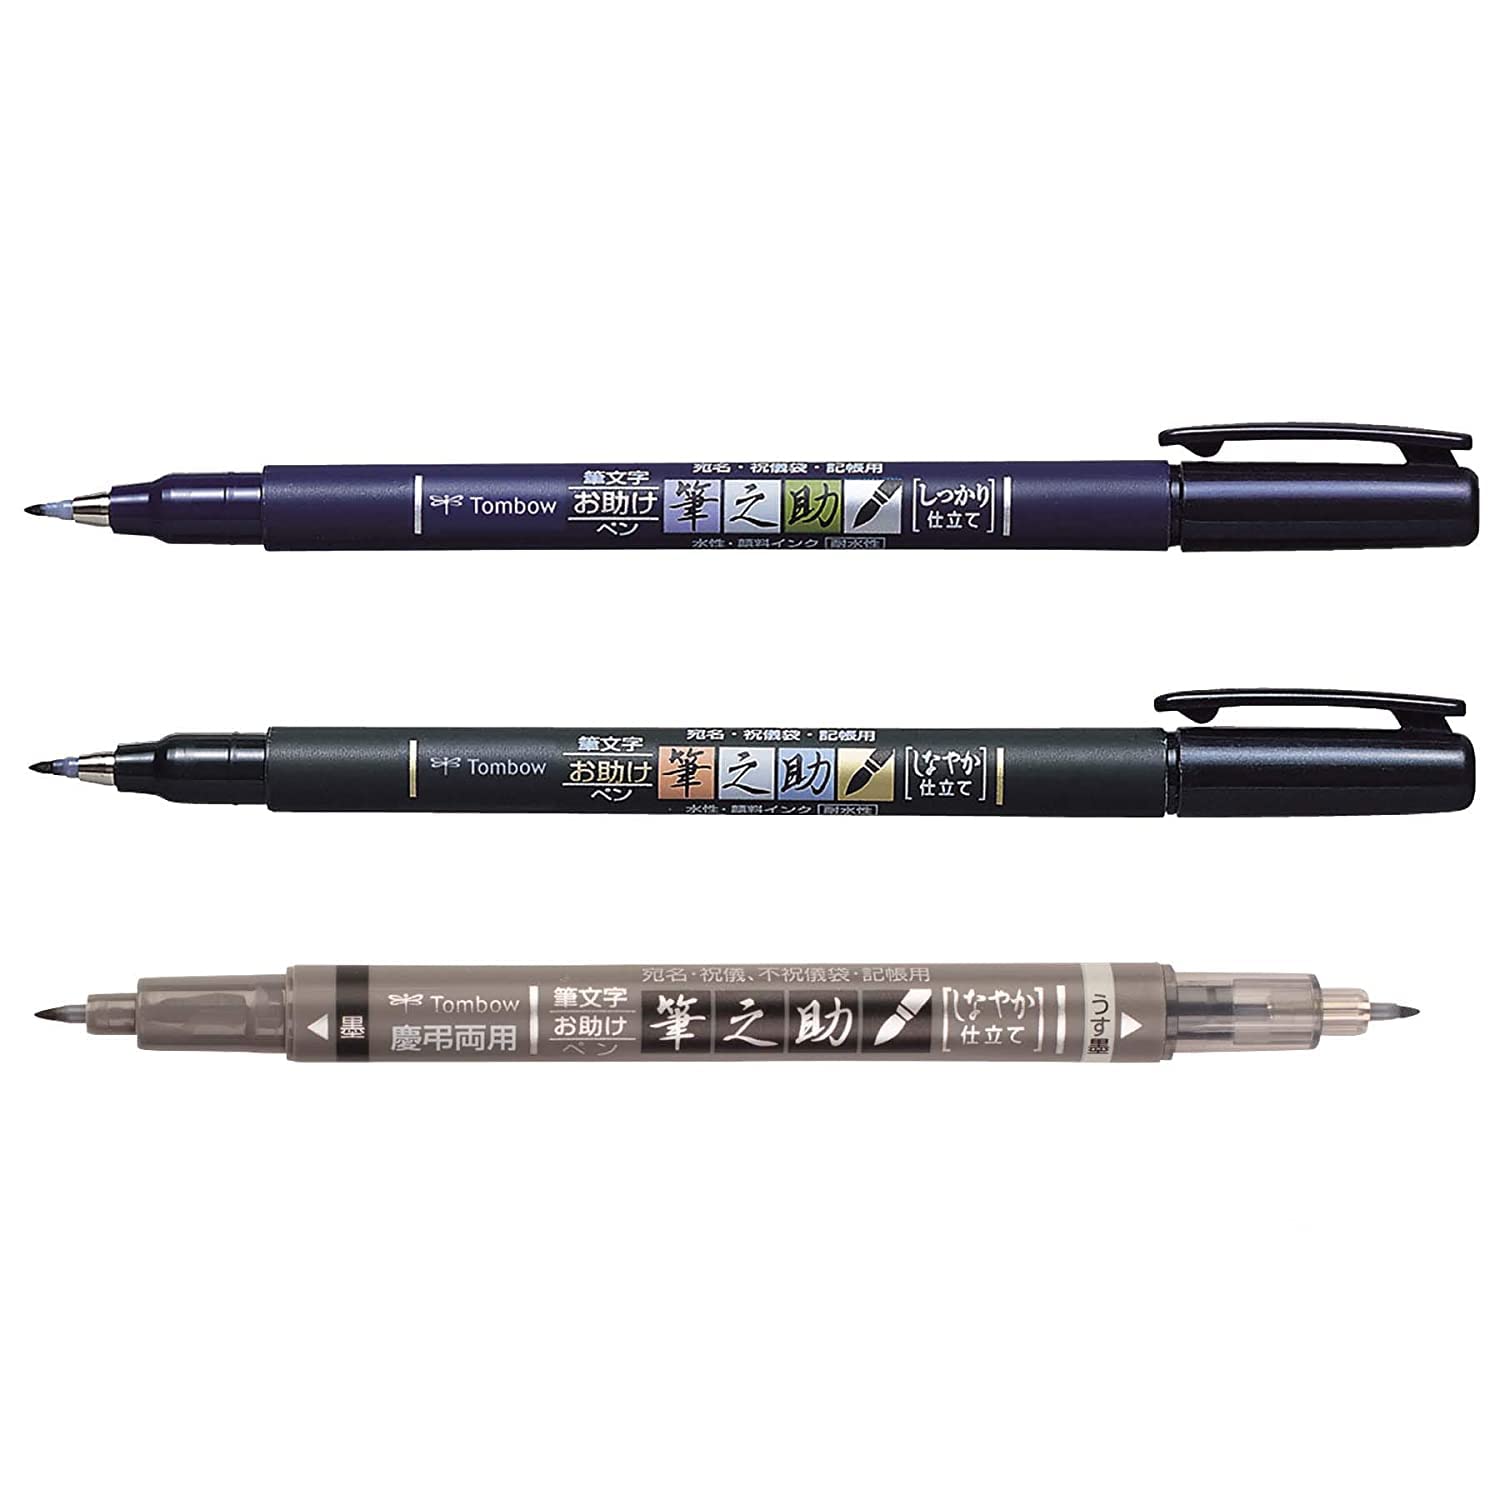 Buy Tombow Fudenosuke Brush Pen- Hard & Soft tip